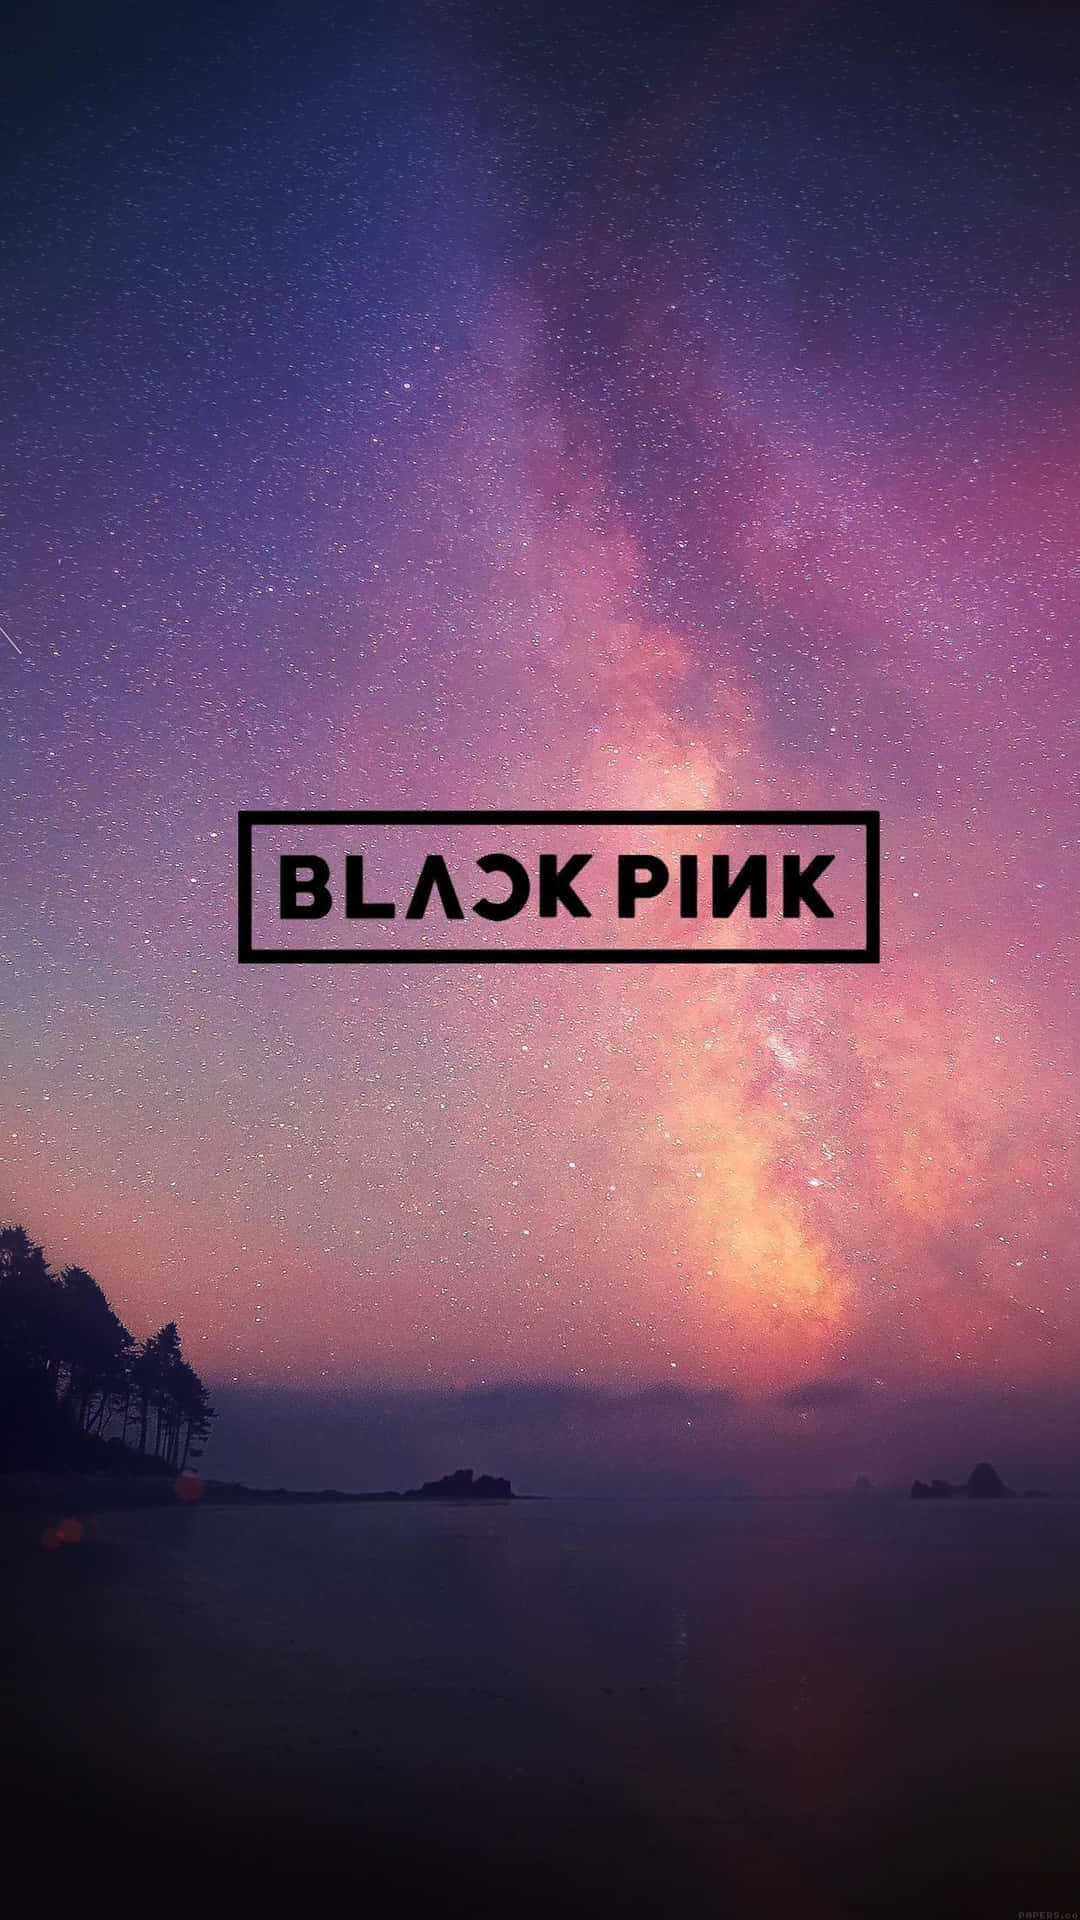 Kpop-royalty Blackpink Bringen Ihre Unglaubliche Energie In Musik Und Mode.